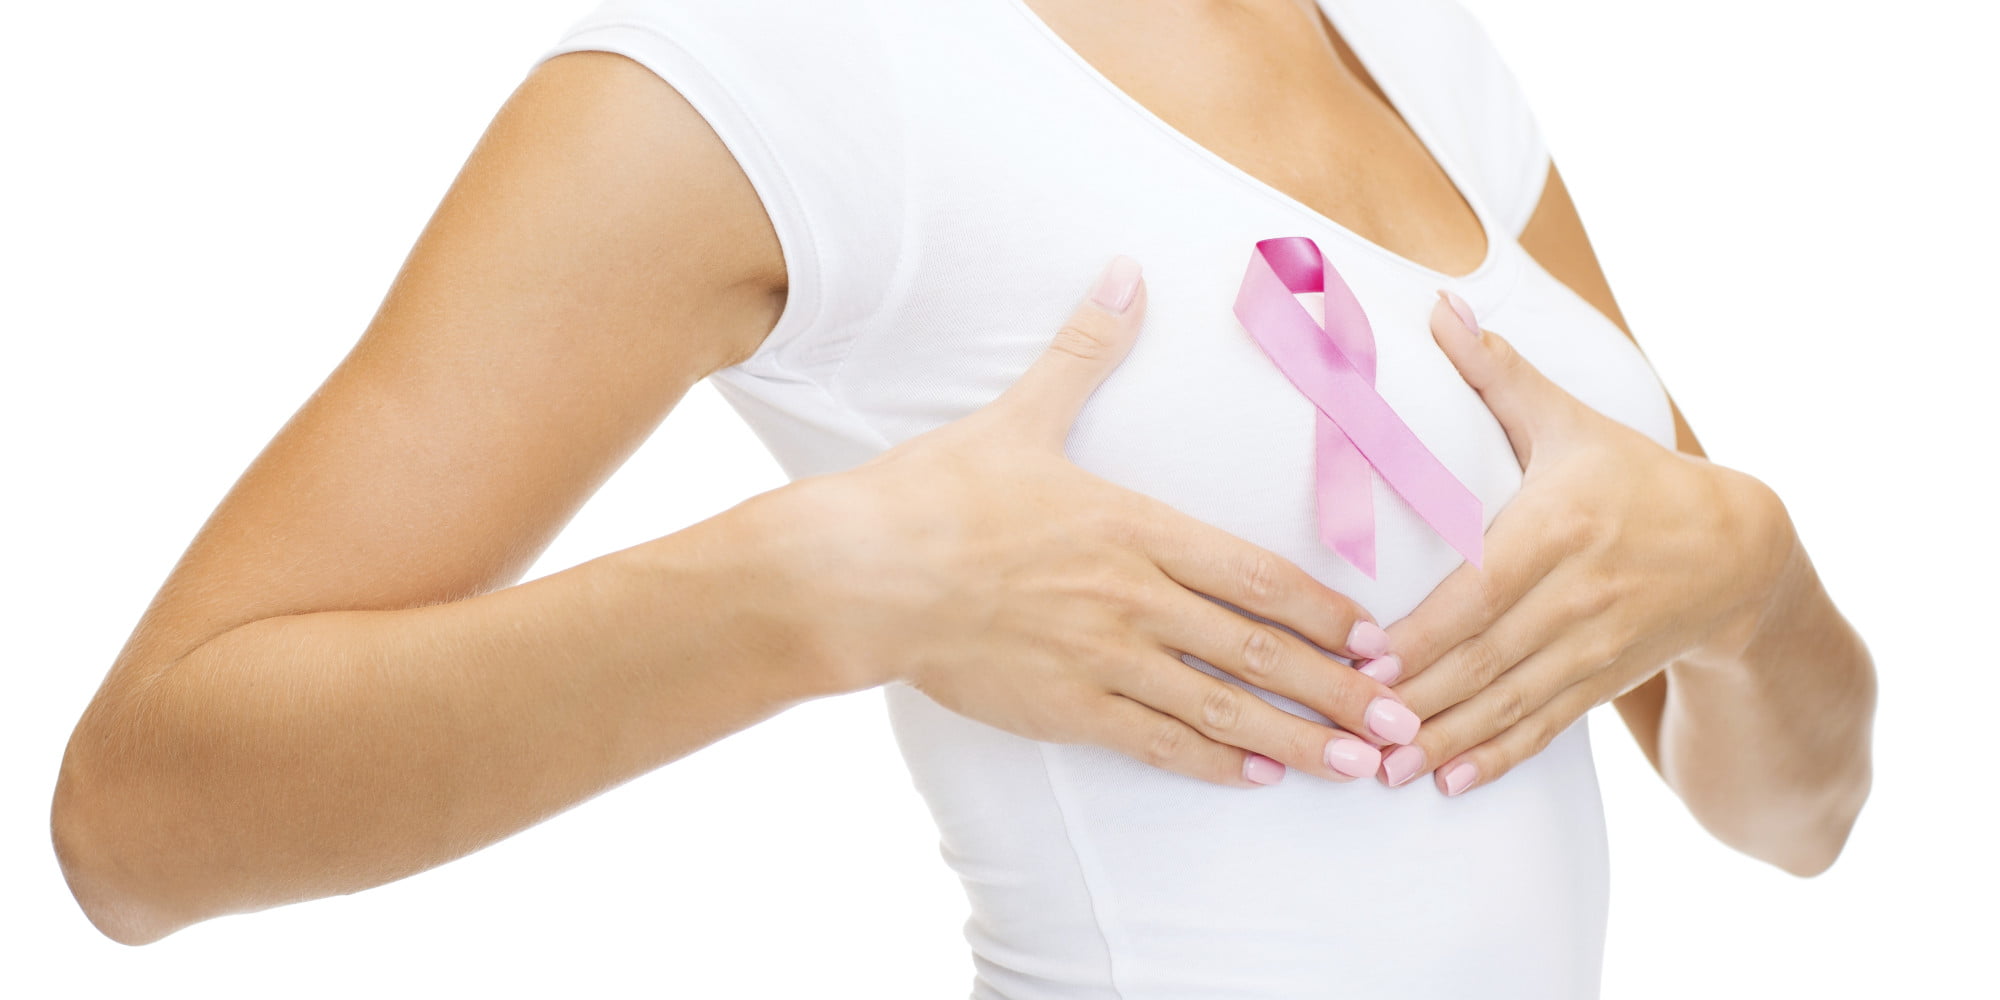 O Breast Cancer Facebook مجلة نقطة العلمية